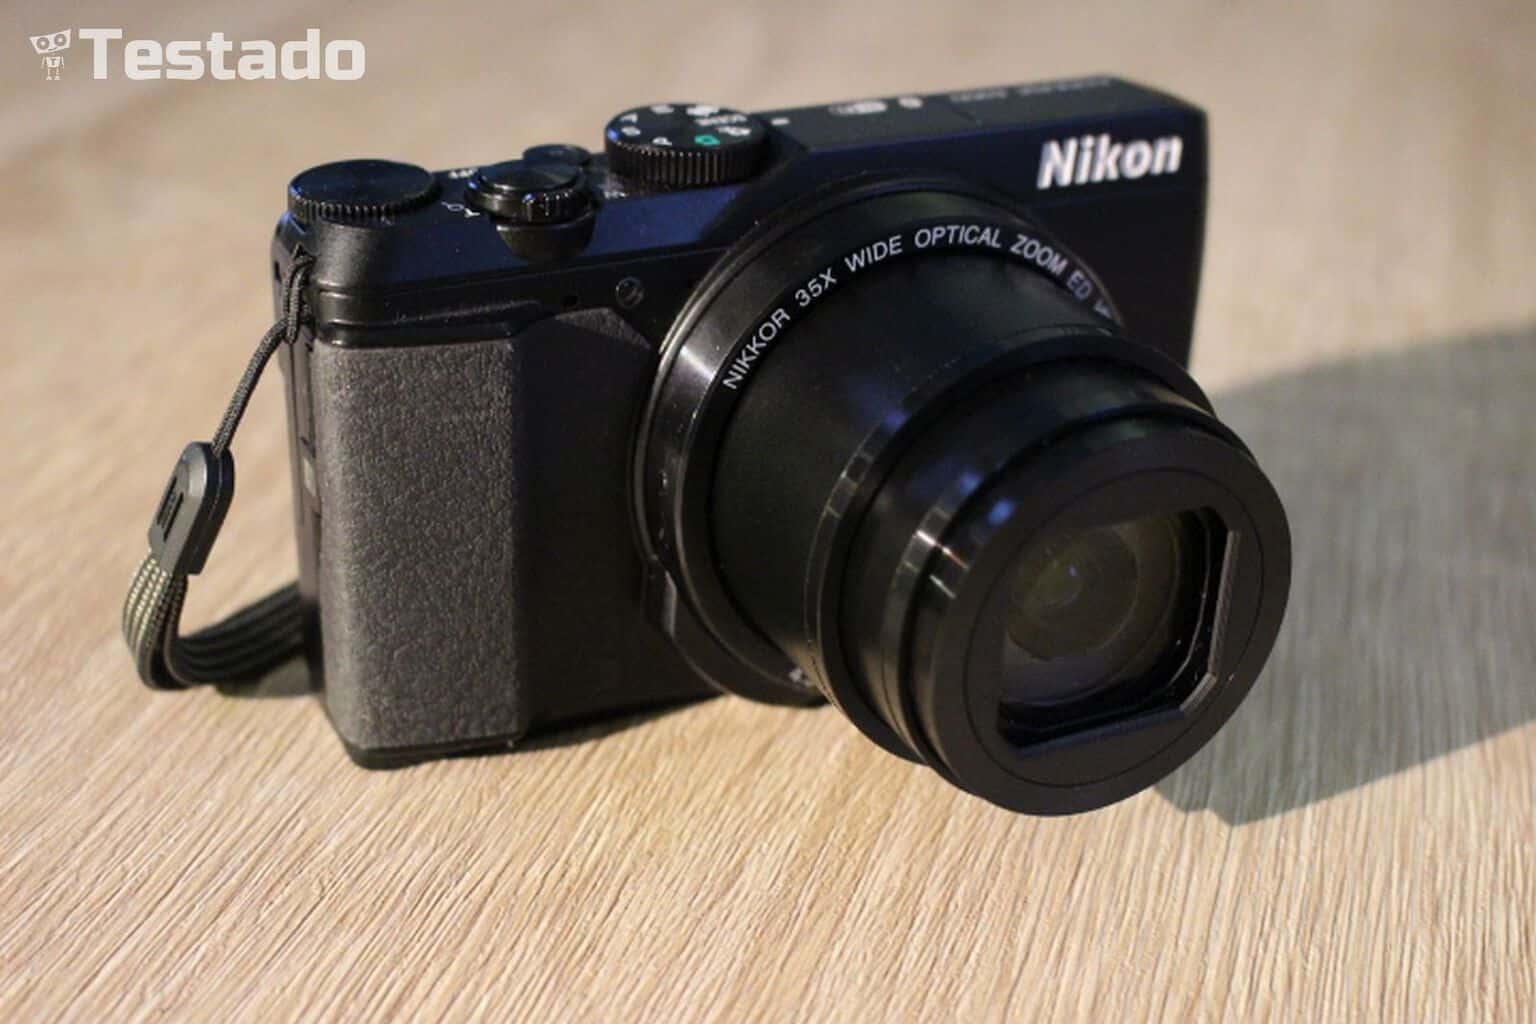 Nikon Coolpix A900 - RECENZE & TEST kompaktu | Testado.cz